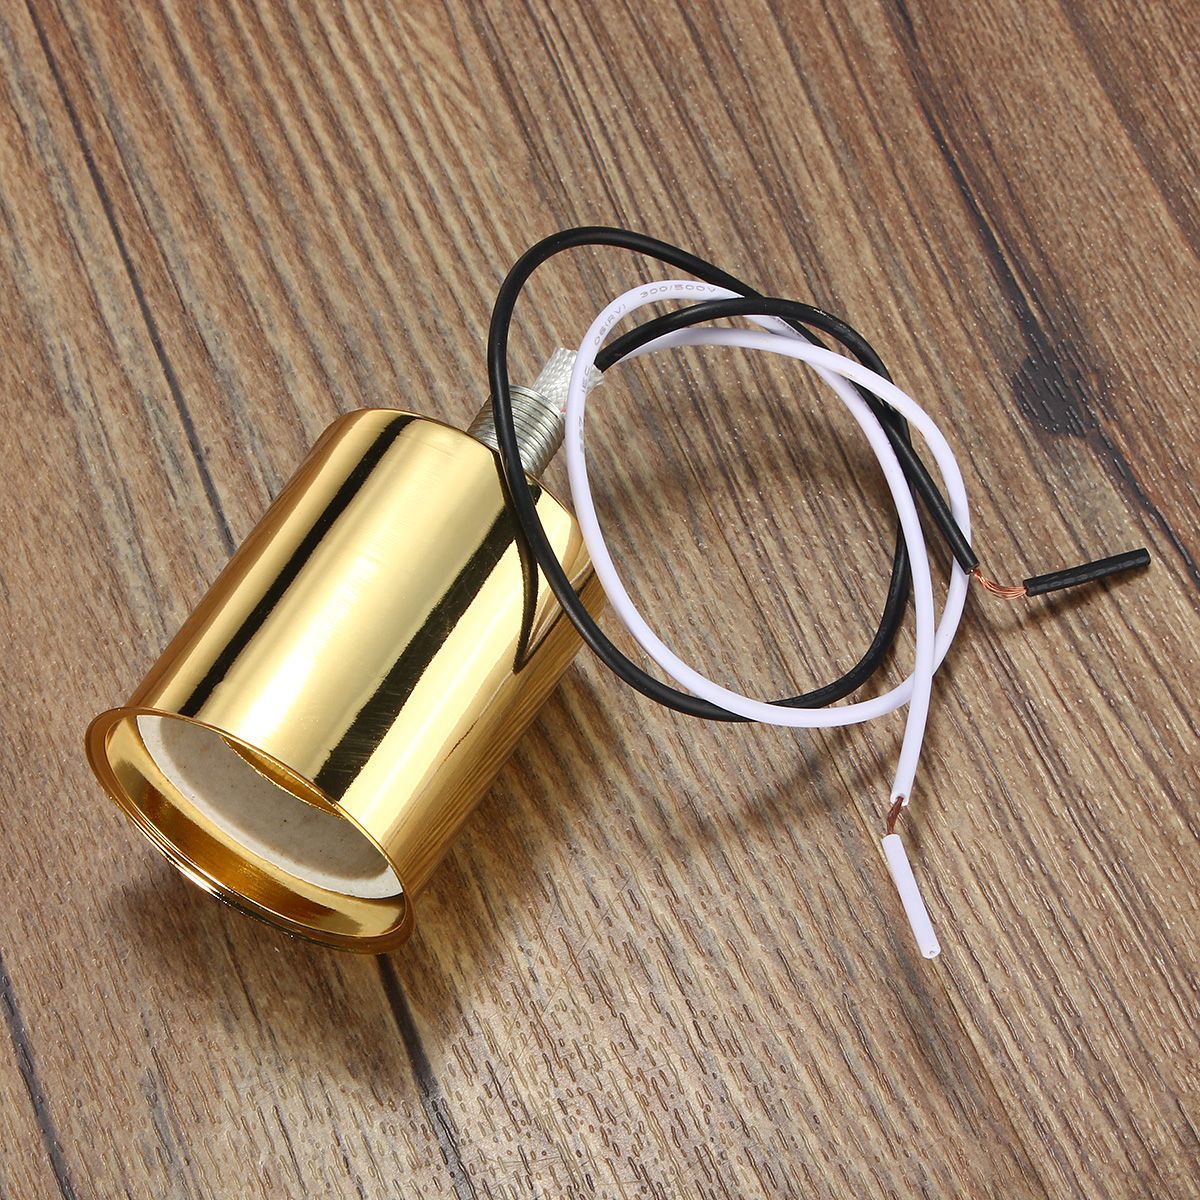 E27-Retro-Vintage-Edison-Ceramic-Screw-Round-Shape-Bulb-Adapter-Hang-Lamp-Holder-Light-Socket-Fittin-1428765